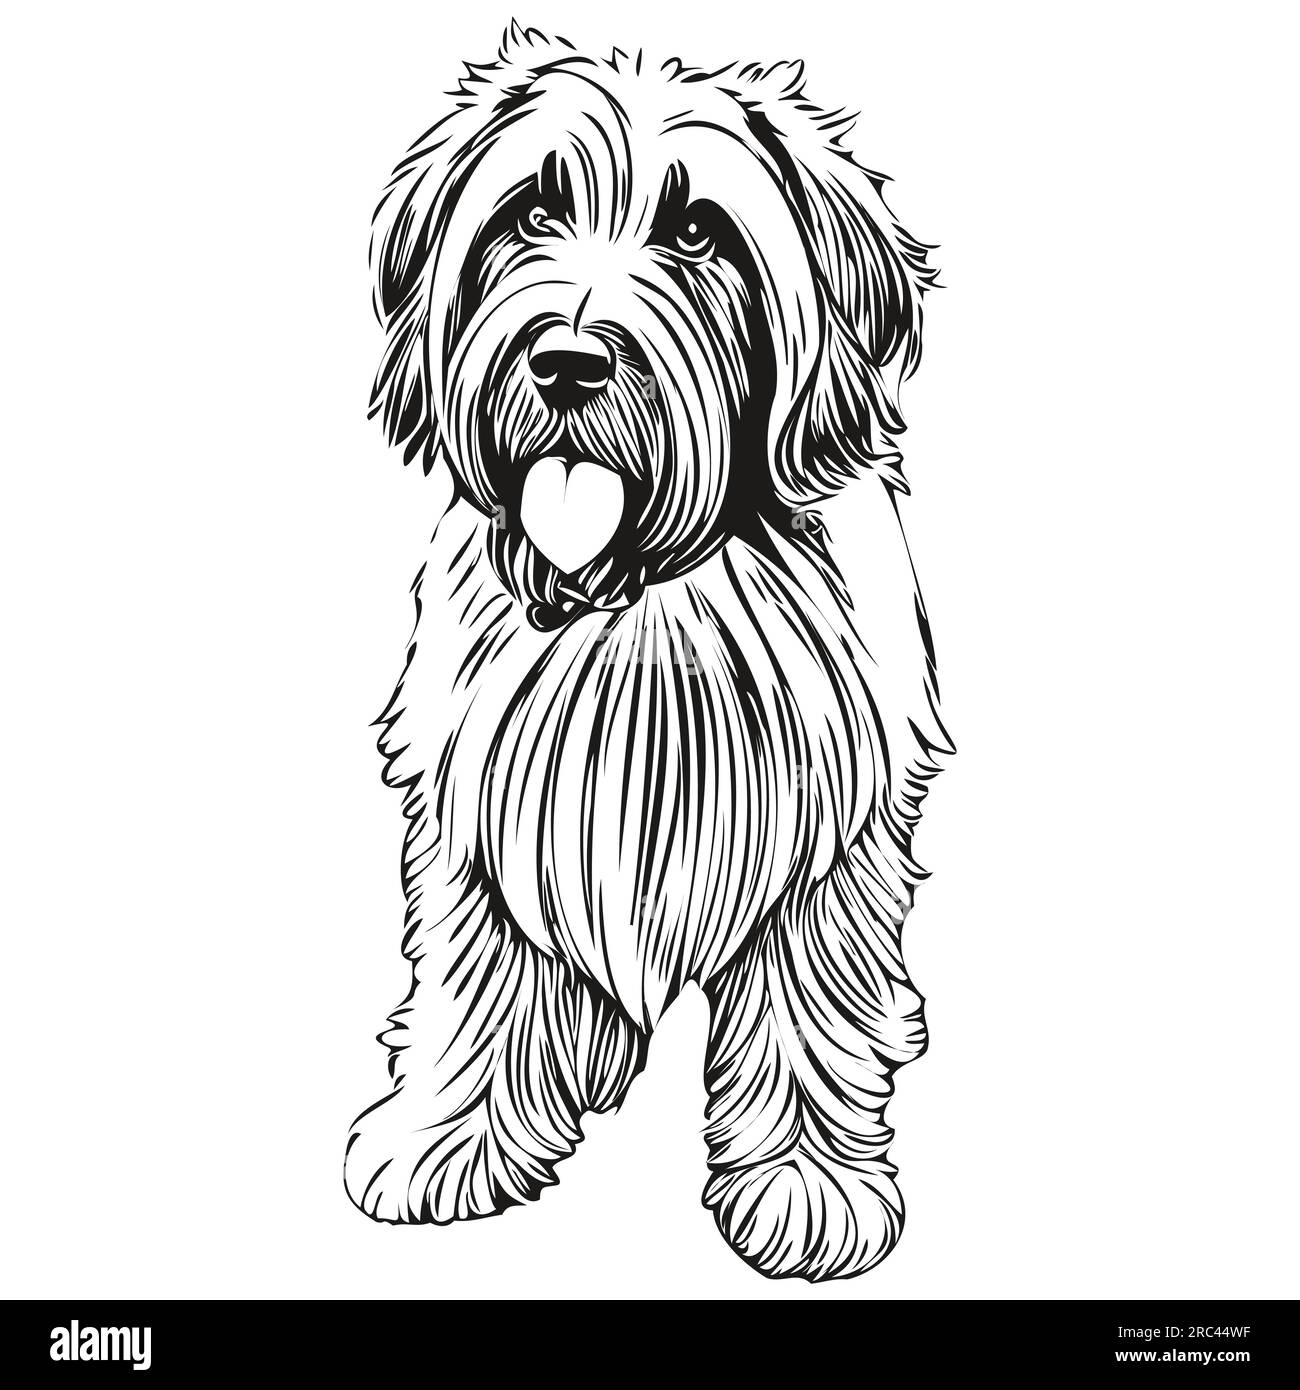 Dessin au trait de race de chien Briard, clip art animal dessin à la main vecteur noir et blanc animal de compagnie réaliste de race Illustration de Vecteur